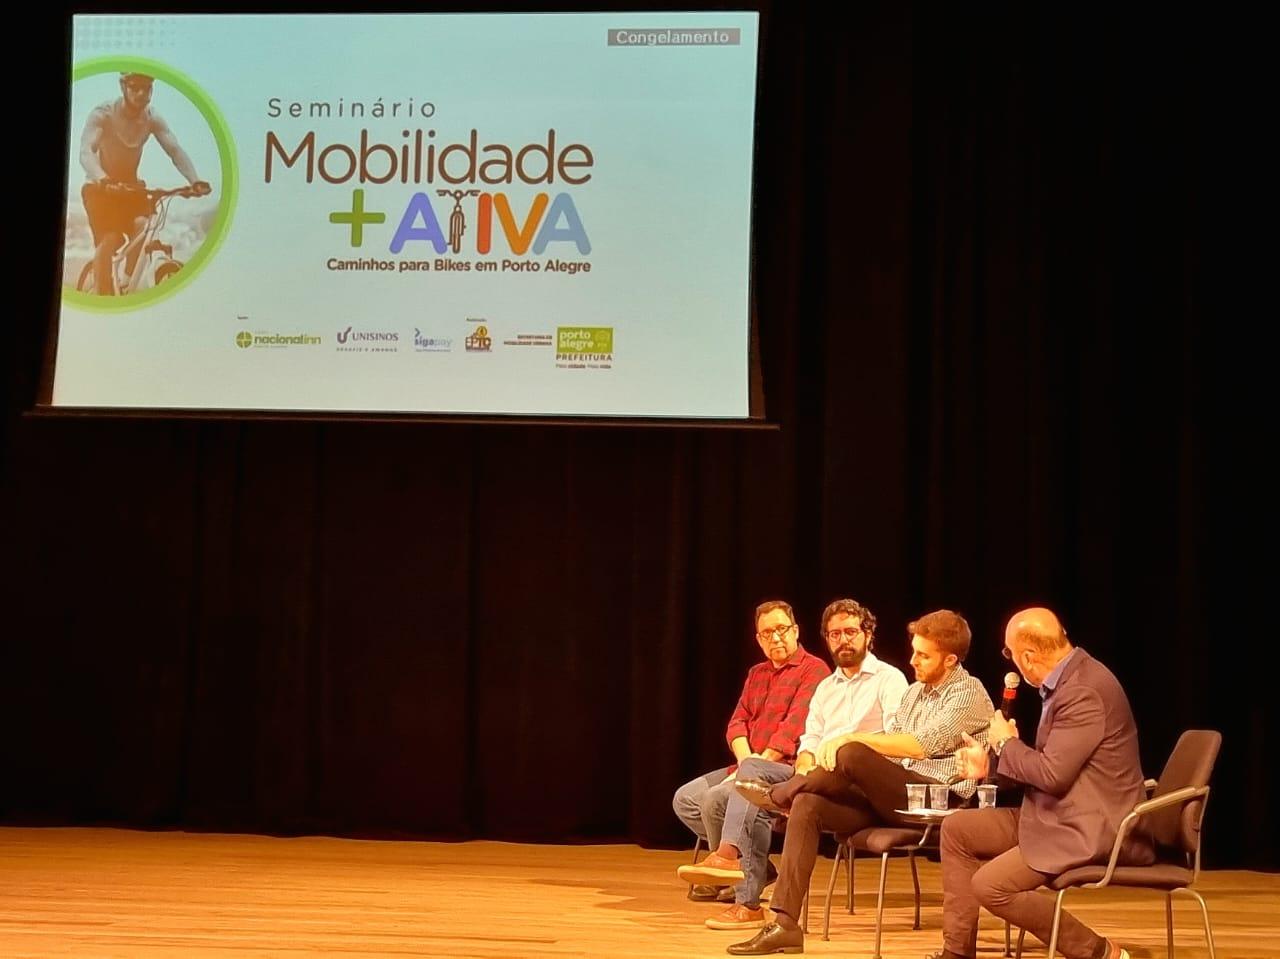 Recife apresenta seus avanços na mobilidade ativa em seminário da Prefeitura de Porto Alegre (RS)